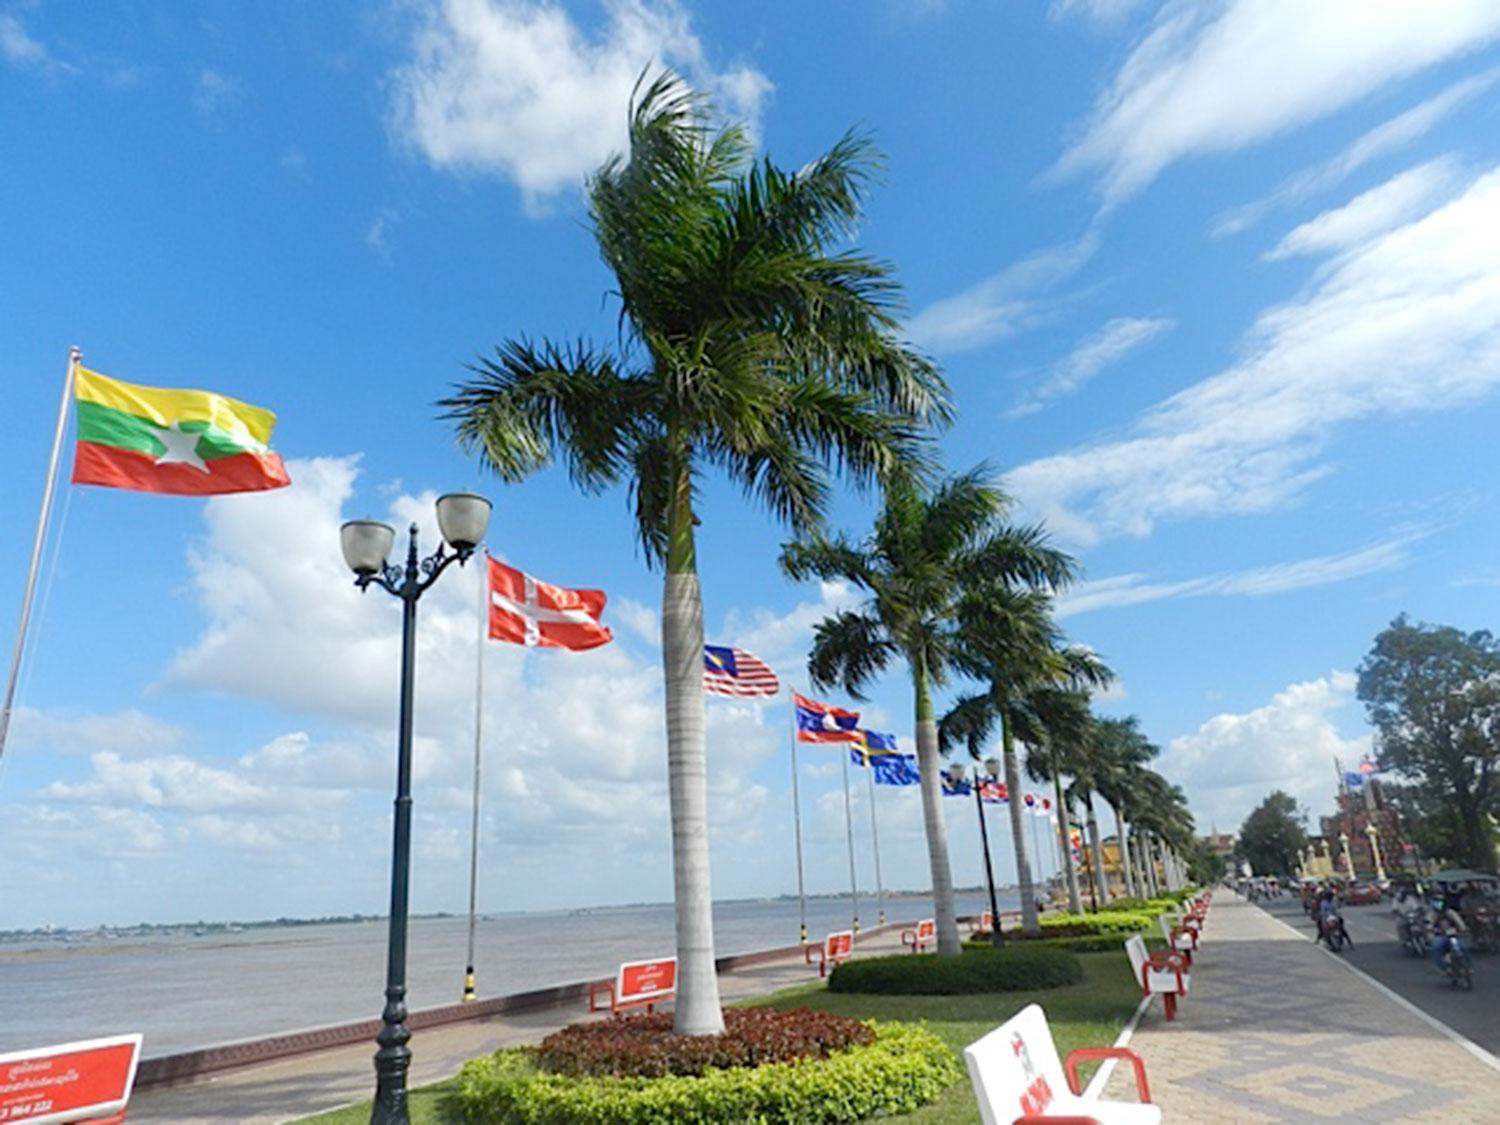 Strandpromenaden i Phnom Penh kantas av vackra palmer och ett 70-tal av världens flaggor, bland annat den svenska.